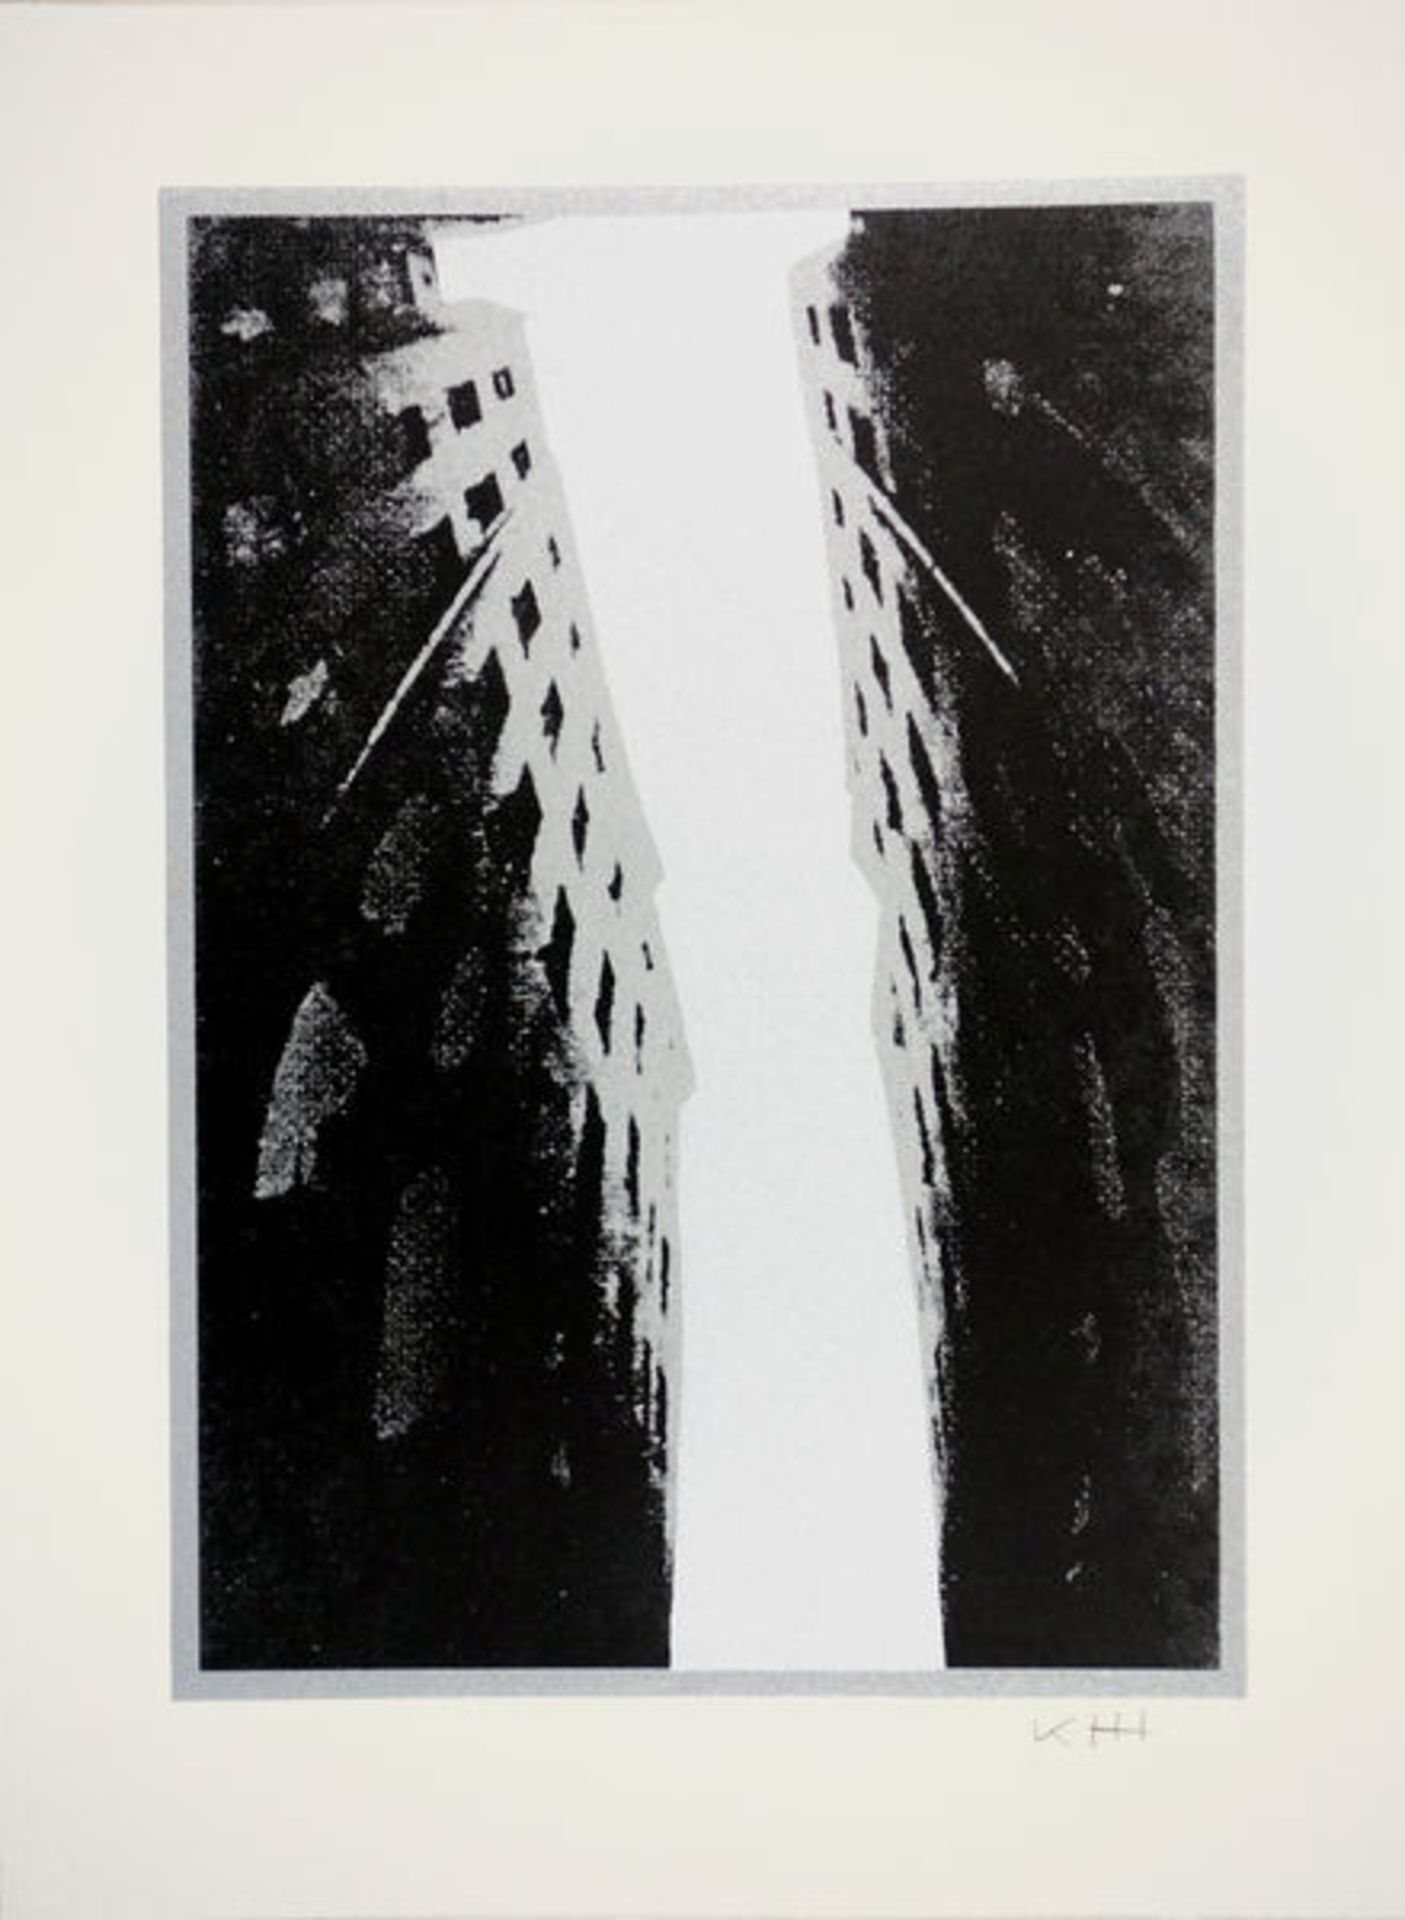 Hödicke, Karl HorstFarblithographie auf Lana Royal Bütten, 42 x 29,8 cmAus der Projektreihe "Der